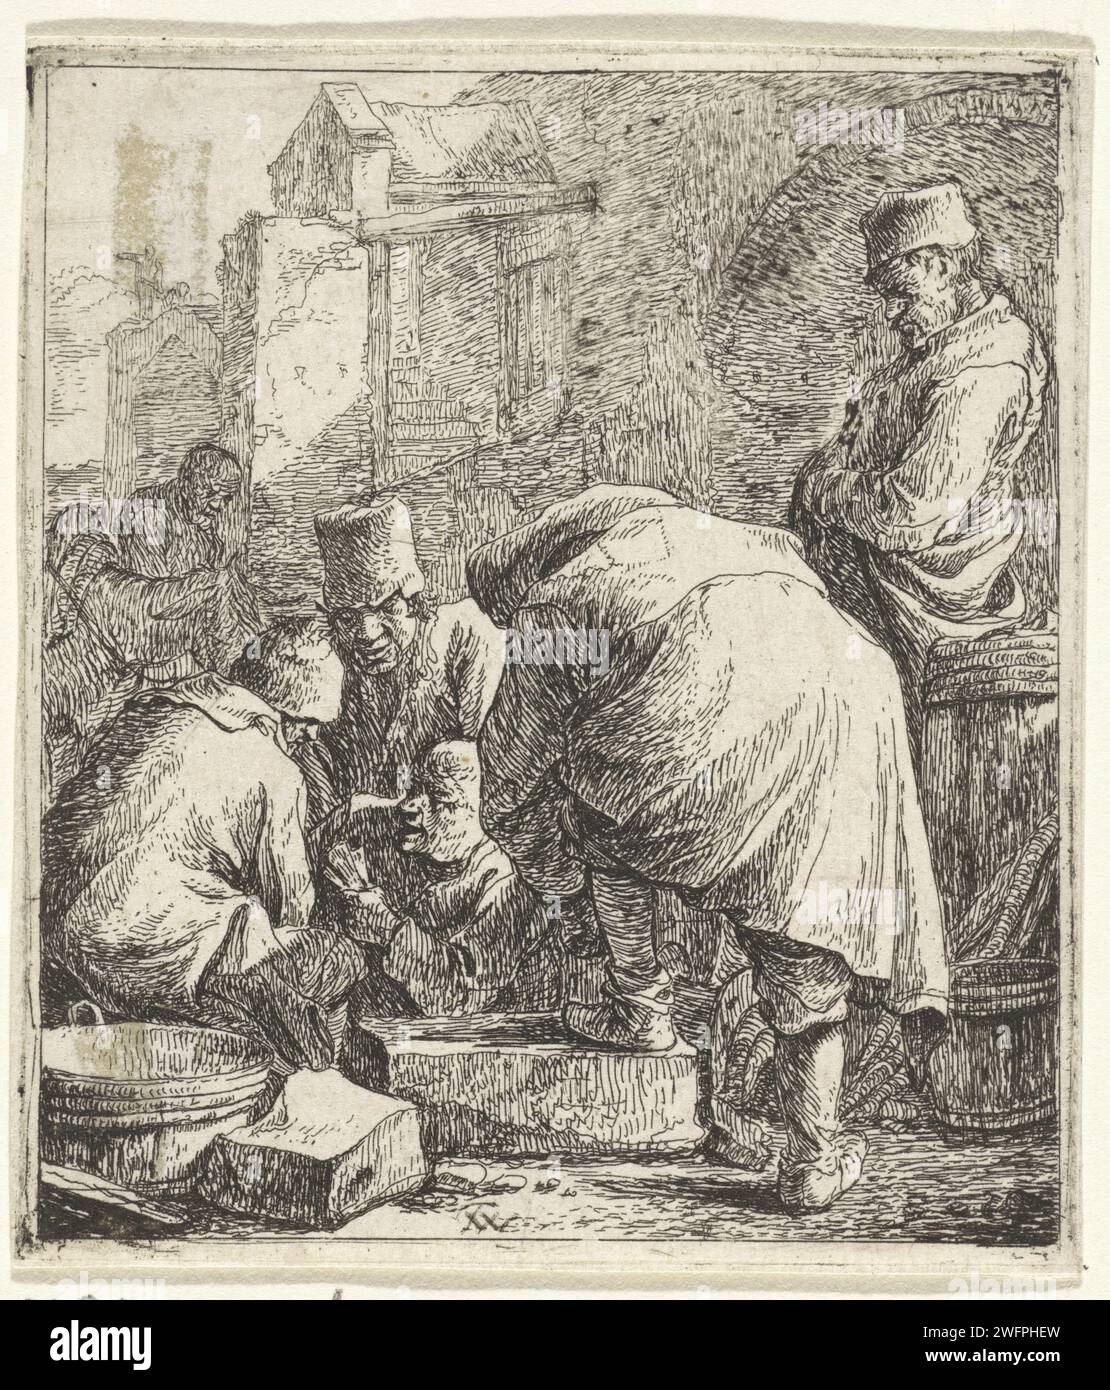 Homme noue ses lacets, Thomas Wijck, 1626 - 1677 imprimer un groupe d'hommes dans la rue. L'un d'eux, vu sur le dos, se penche avec son pied sur une élévation et noue ses lacets. dentelle de gravure de papier Banque D'Images